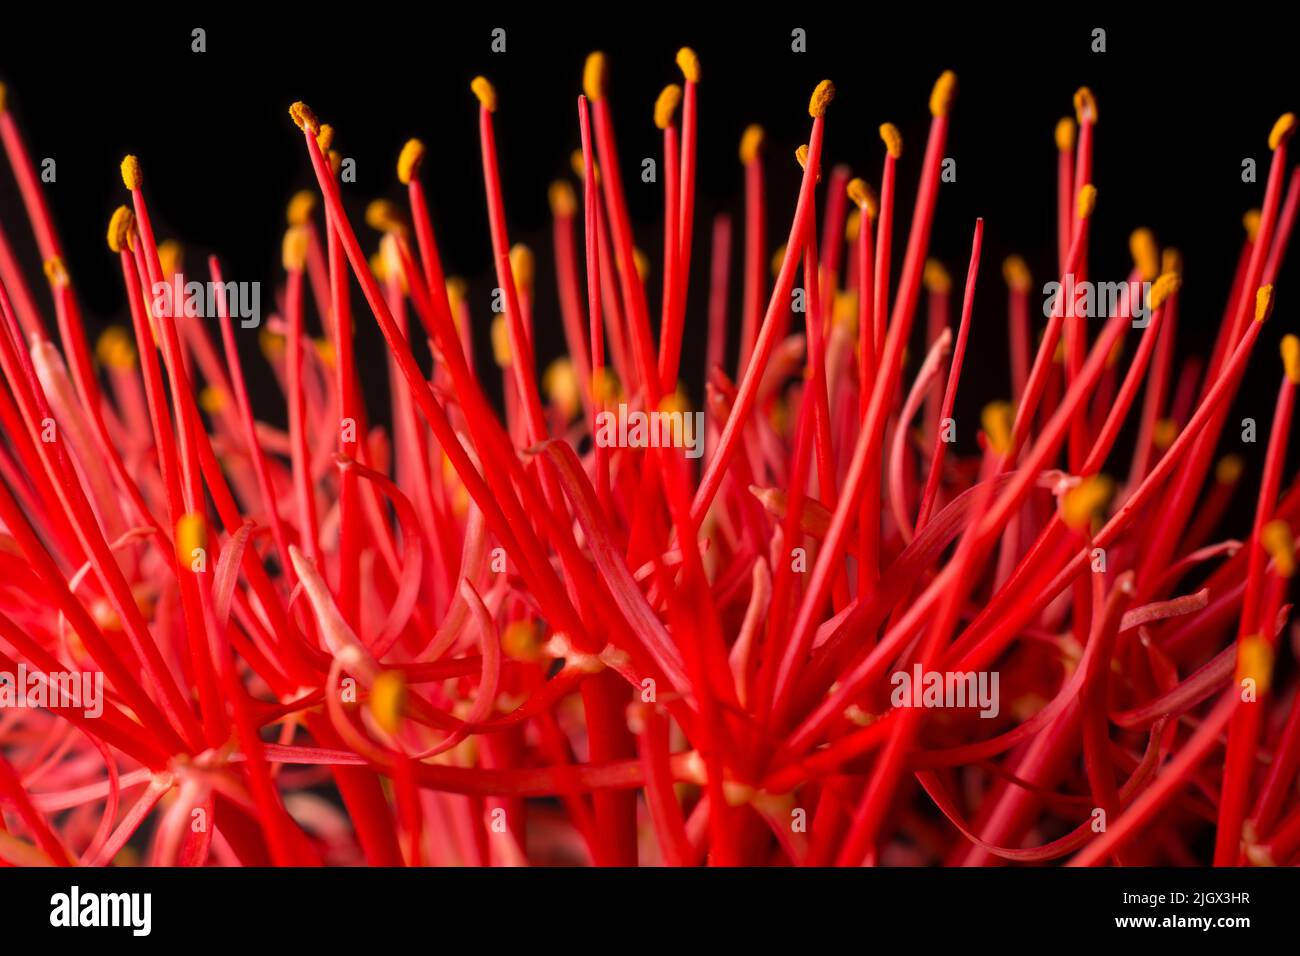 Nahaufnahme abstrakt von calliandra Blume, allgemein bekannt als Puderlilie oder Blut oder Feuerball Blume, Blätterball geformt, leuchtend rot und rosa Blüte Stockfoto